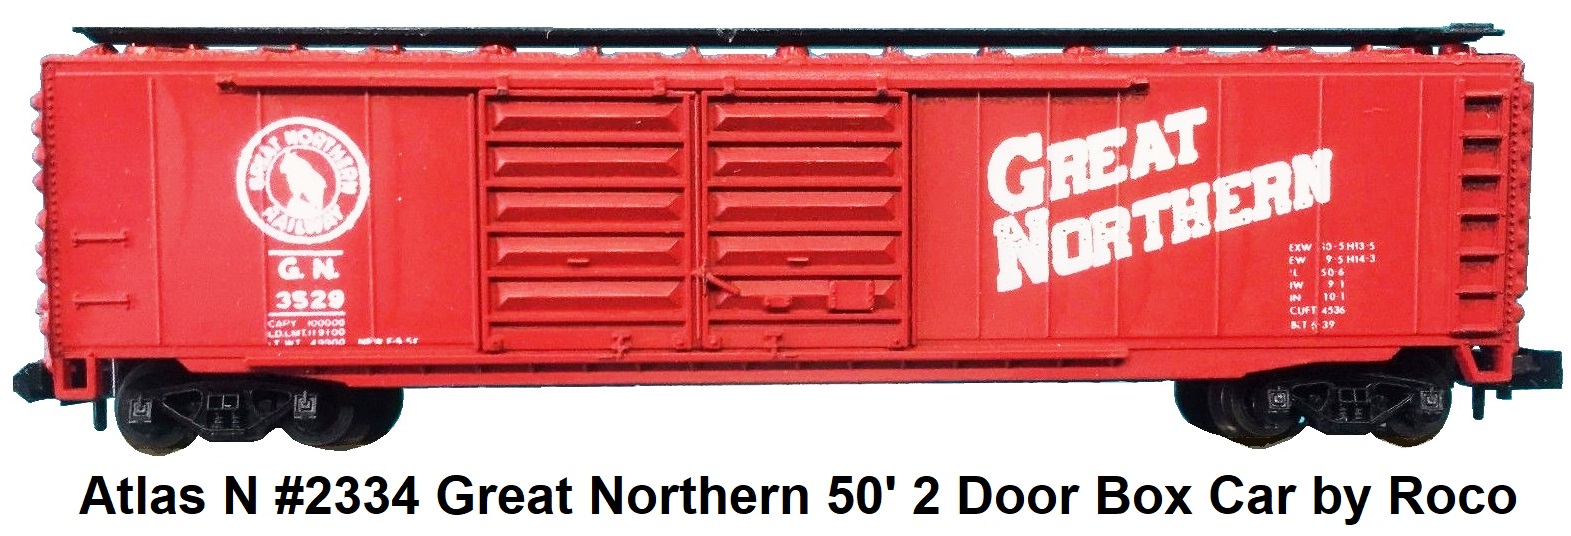 Atlas N #2334 Great Northern 50' 2 Door Box Car by Roco